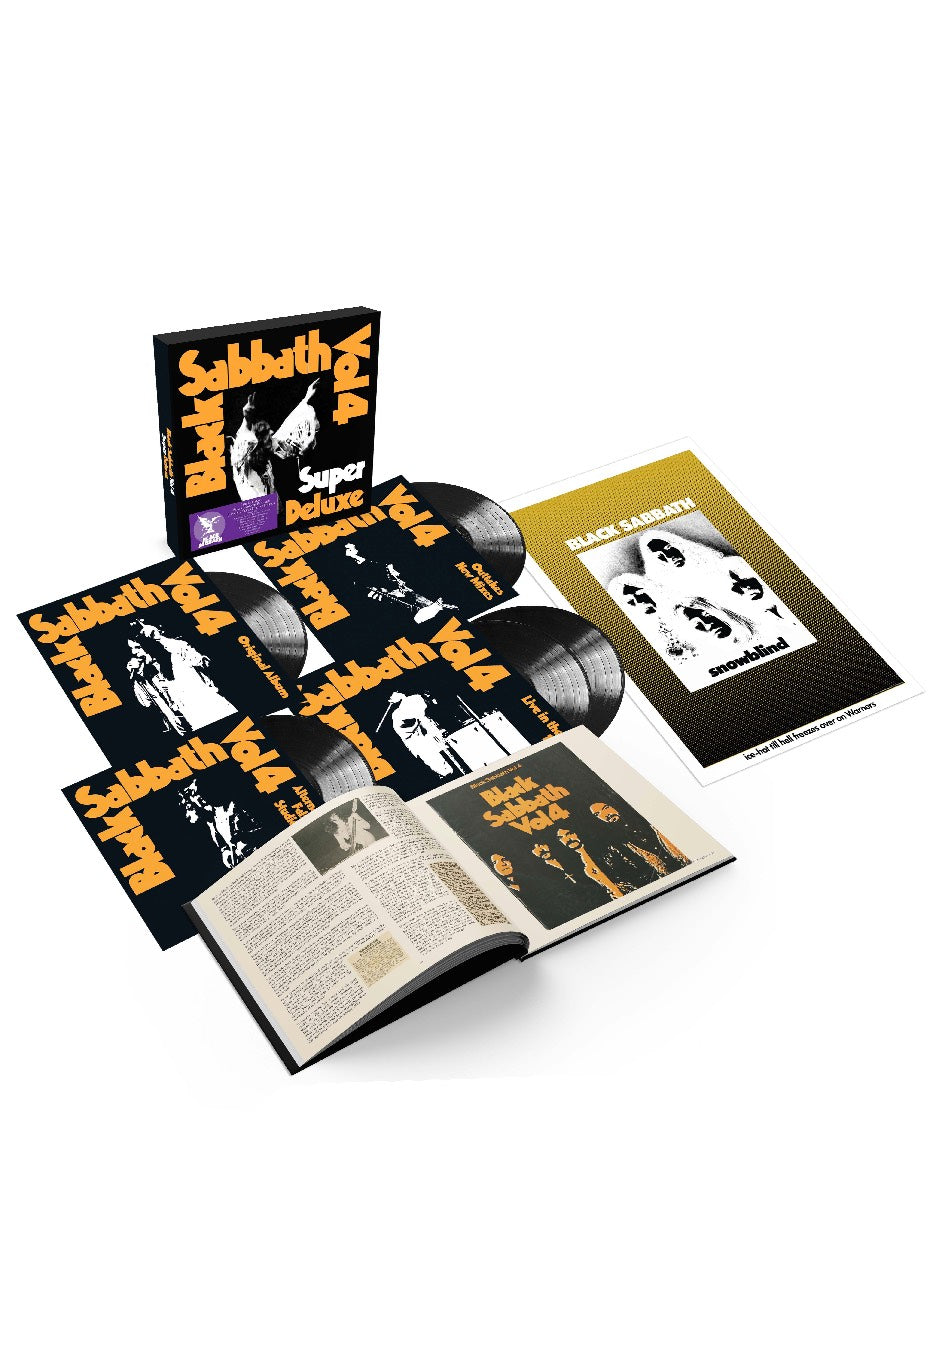 Black Sabbath - Vol.4 (Super Deluxe) - Vinyl Box | Neutral-Image